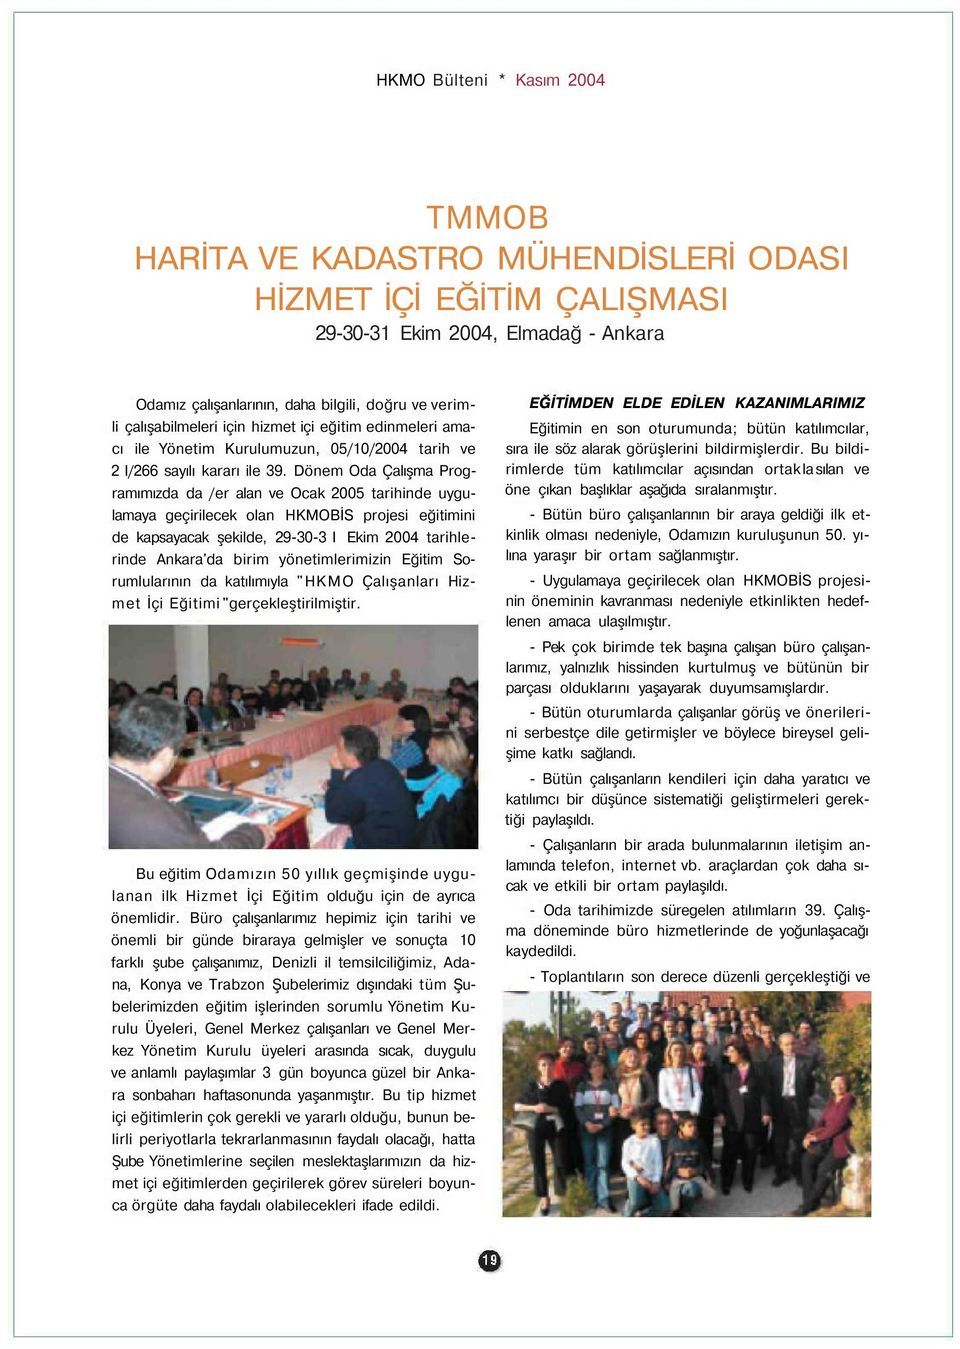 Dönem Oda Çalışma Programımızda da /er alan ve Ocak 2005 tarihinde uygulamaya geçirilecek olan HKMOBİS projesi eğitimini de kapsayacak şekilde, 29-30-3 I Ekim 2004 tarihlerinde Ankara'da birim